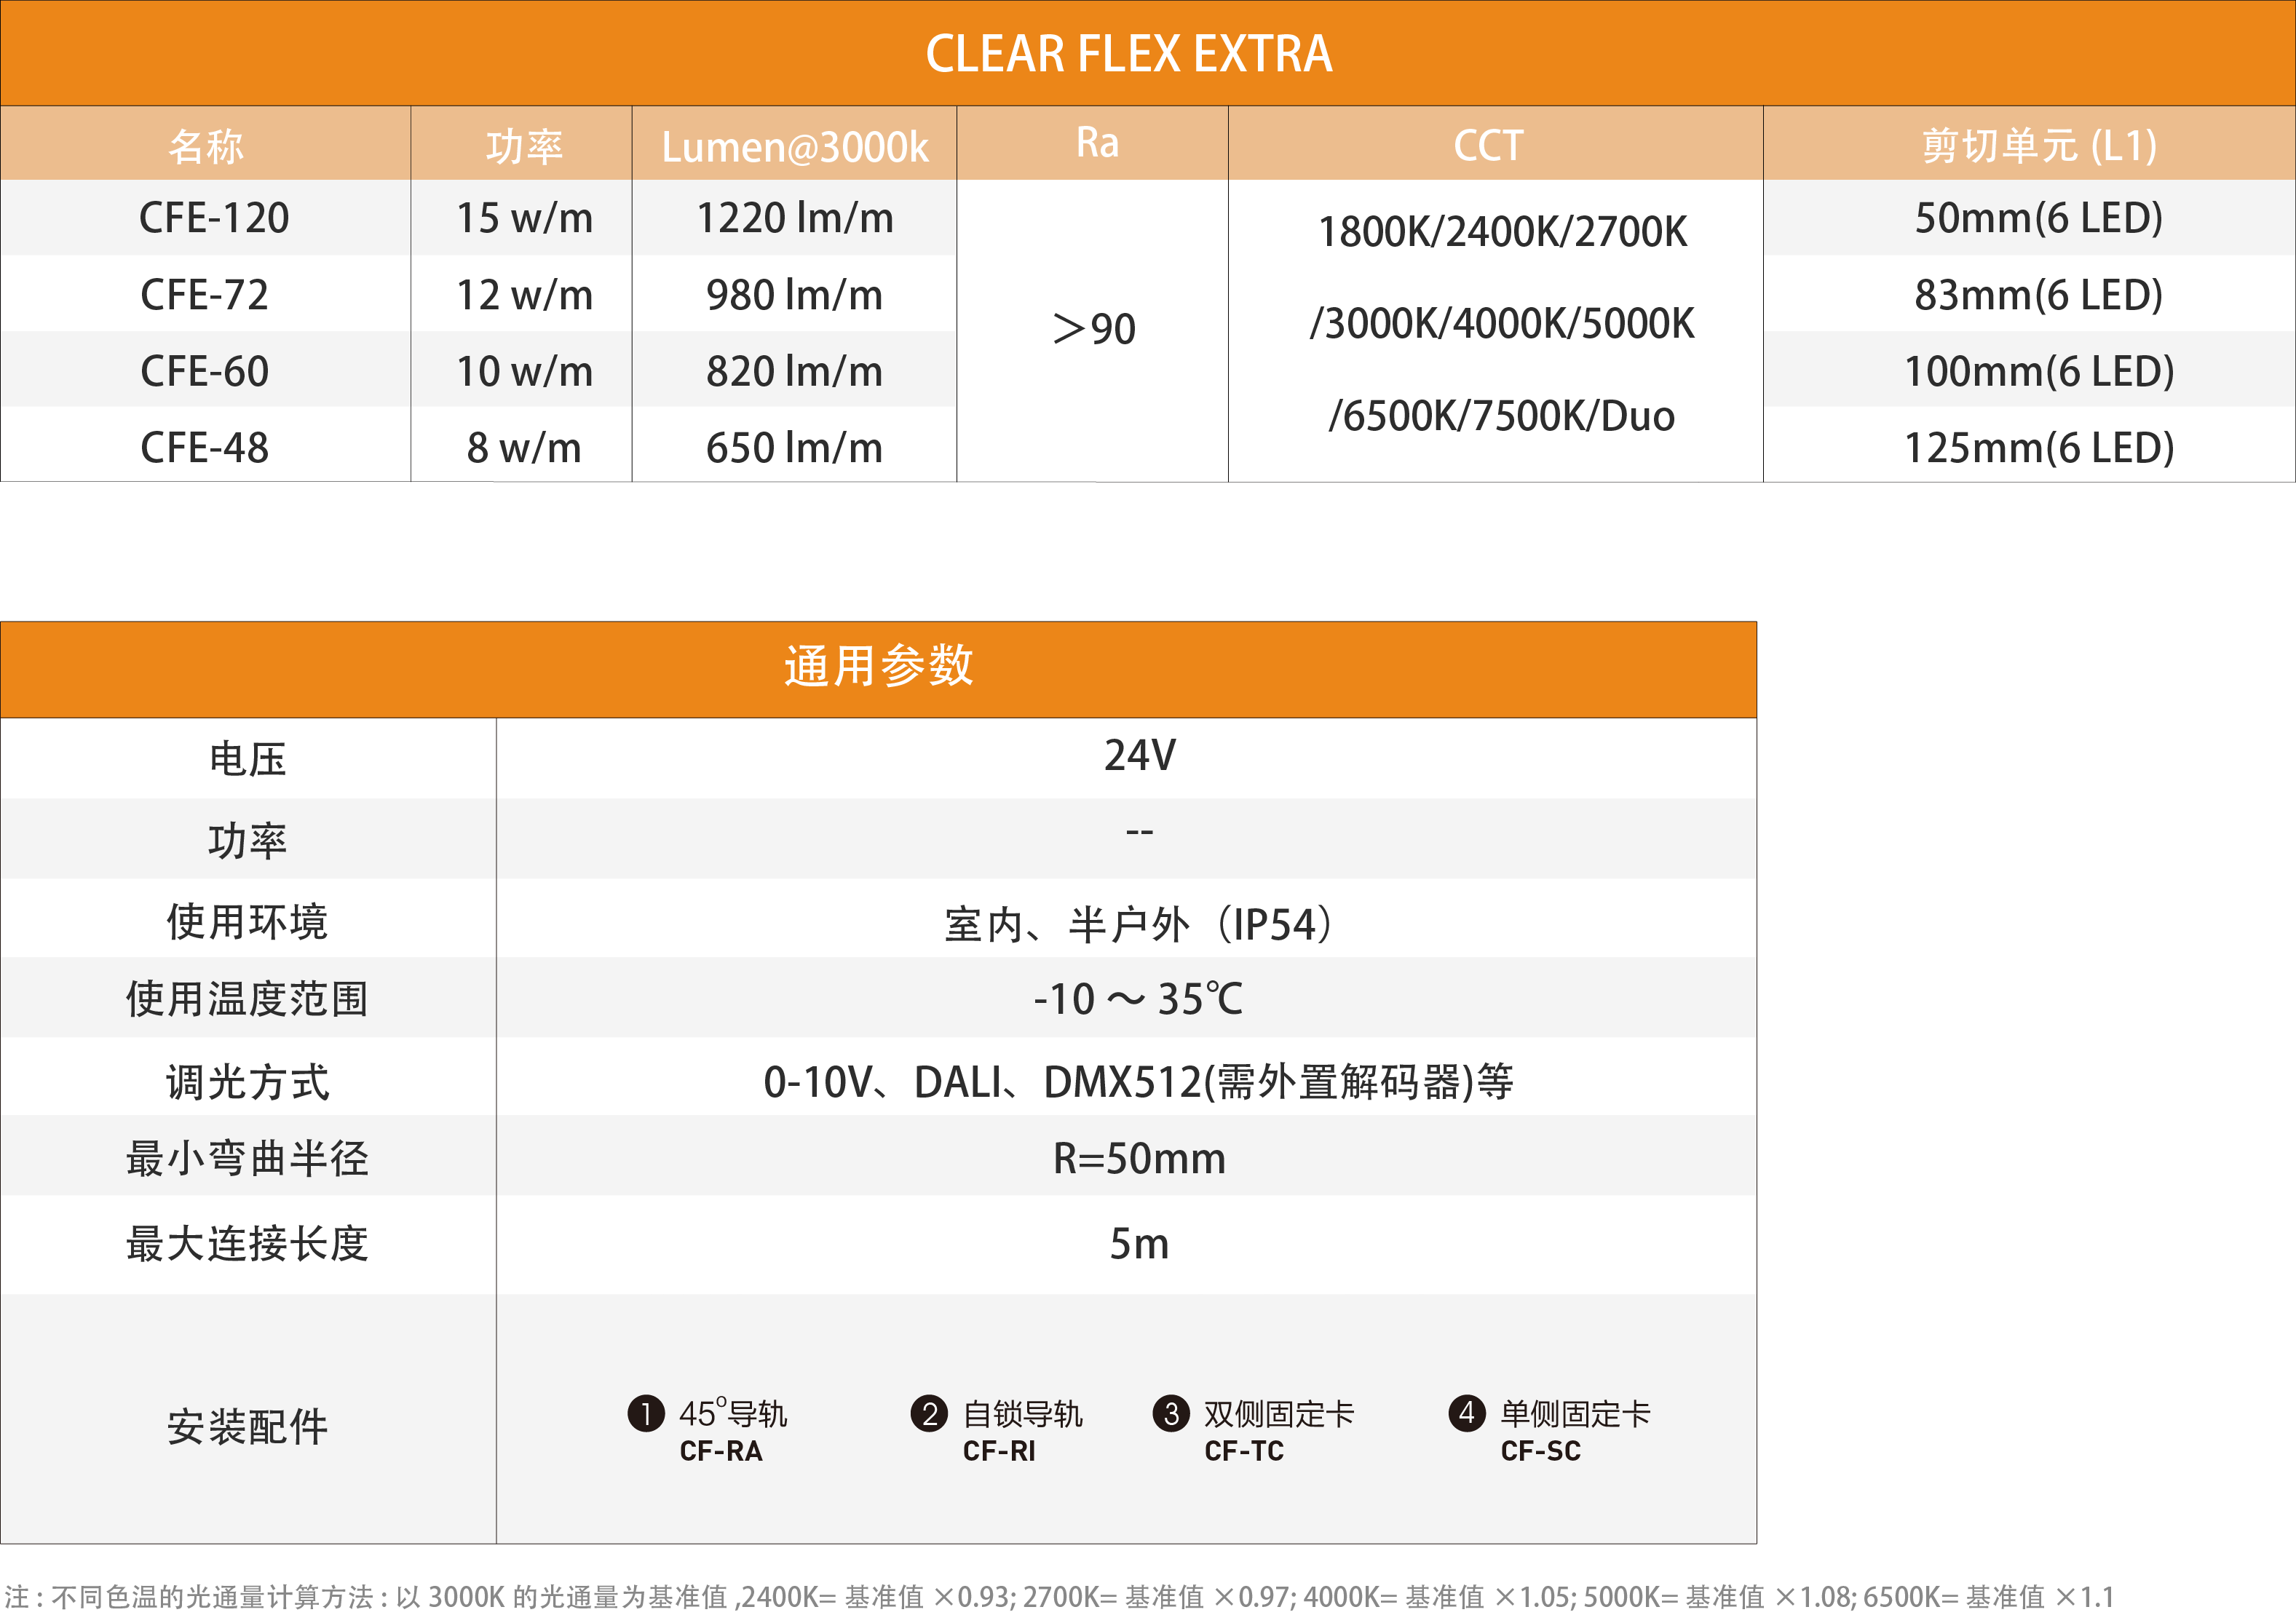 Clear Flex Extra